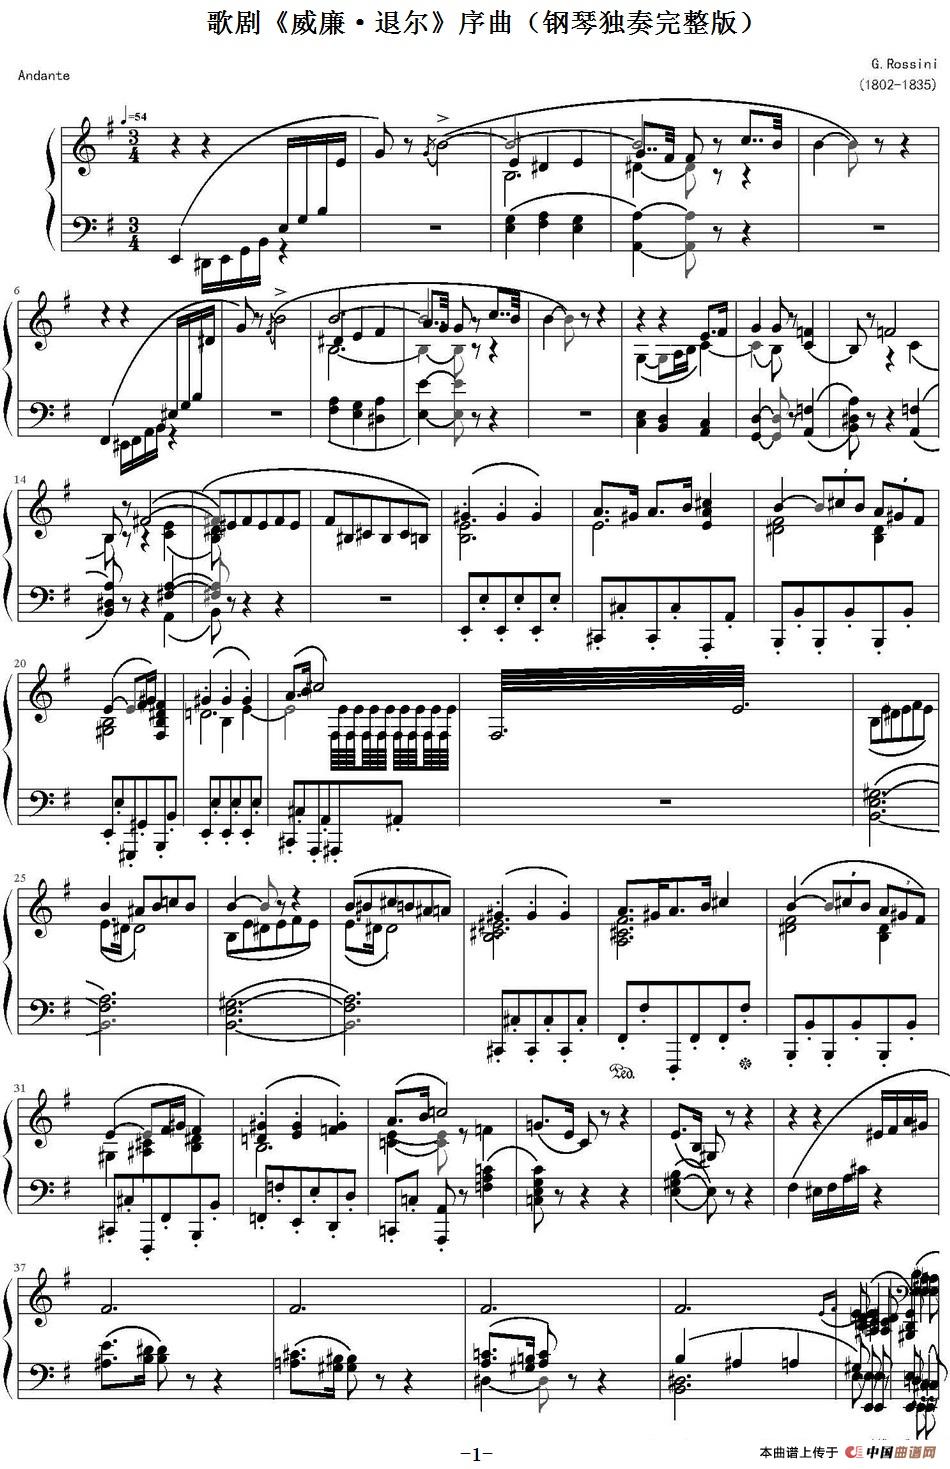 《歌剧《威廉·退尔》序曲》钢琴曲谱图分享